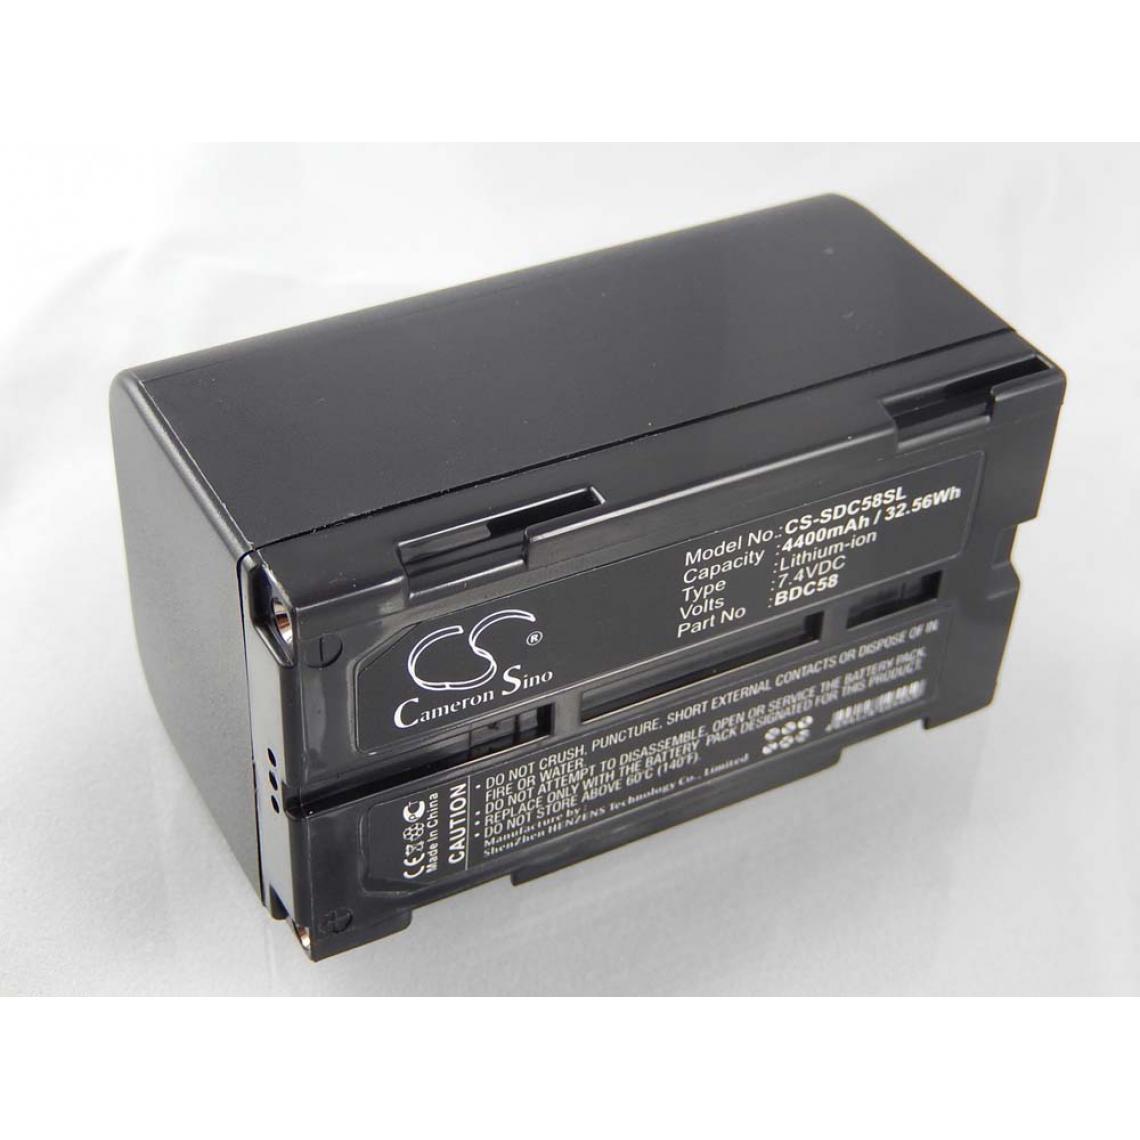 Vhbw - vhbw Batterie compatible avec Sokkia SDL30M Digital Level, SDL50, SDL50 Digital Level, SET200 outil de mesure (4400mAh, 7,4V, Li-ion) - Piles rechargeables